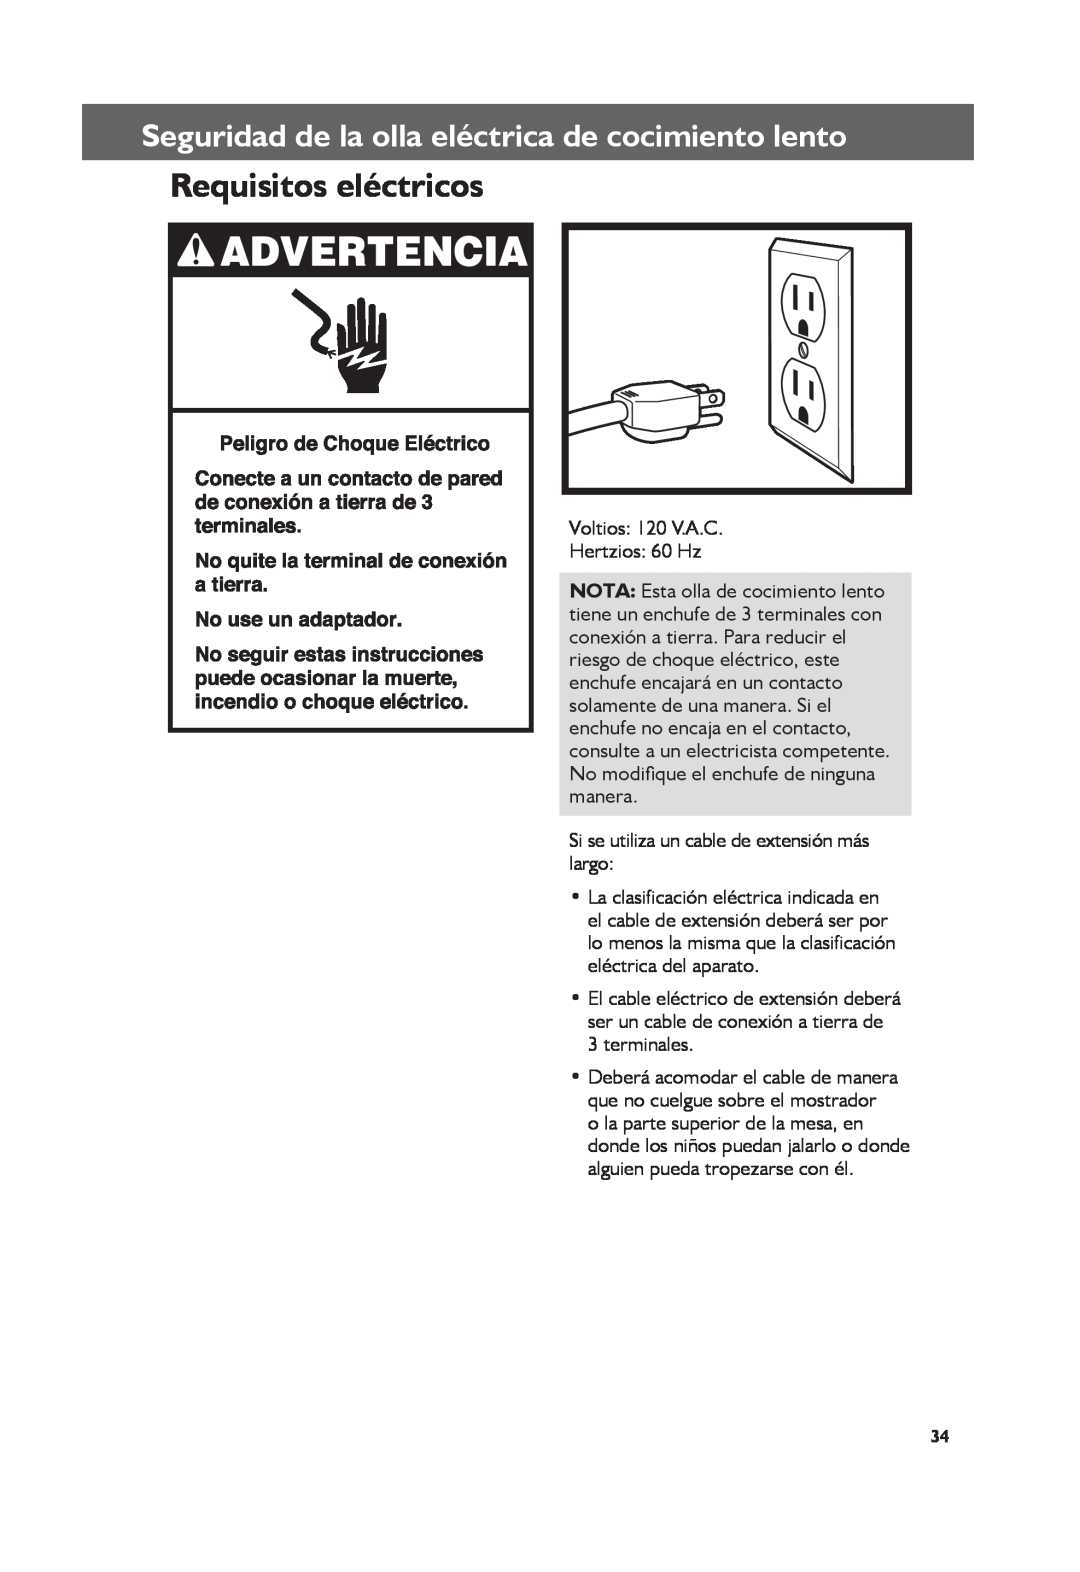 KitchenAid KSC6222, KSC6223 manual Requisitos eléctricos, Seguridad de la olla eléctrica de cocimiento lento 